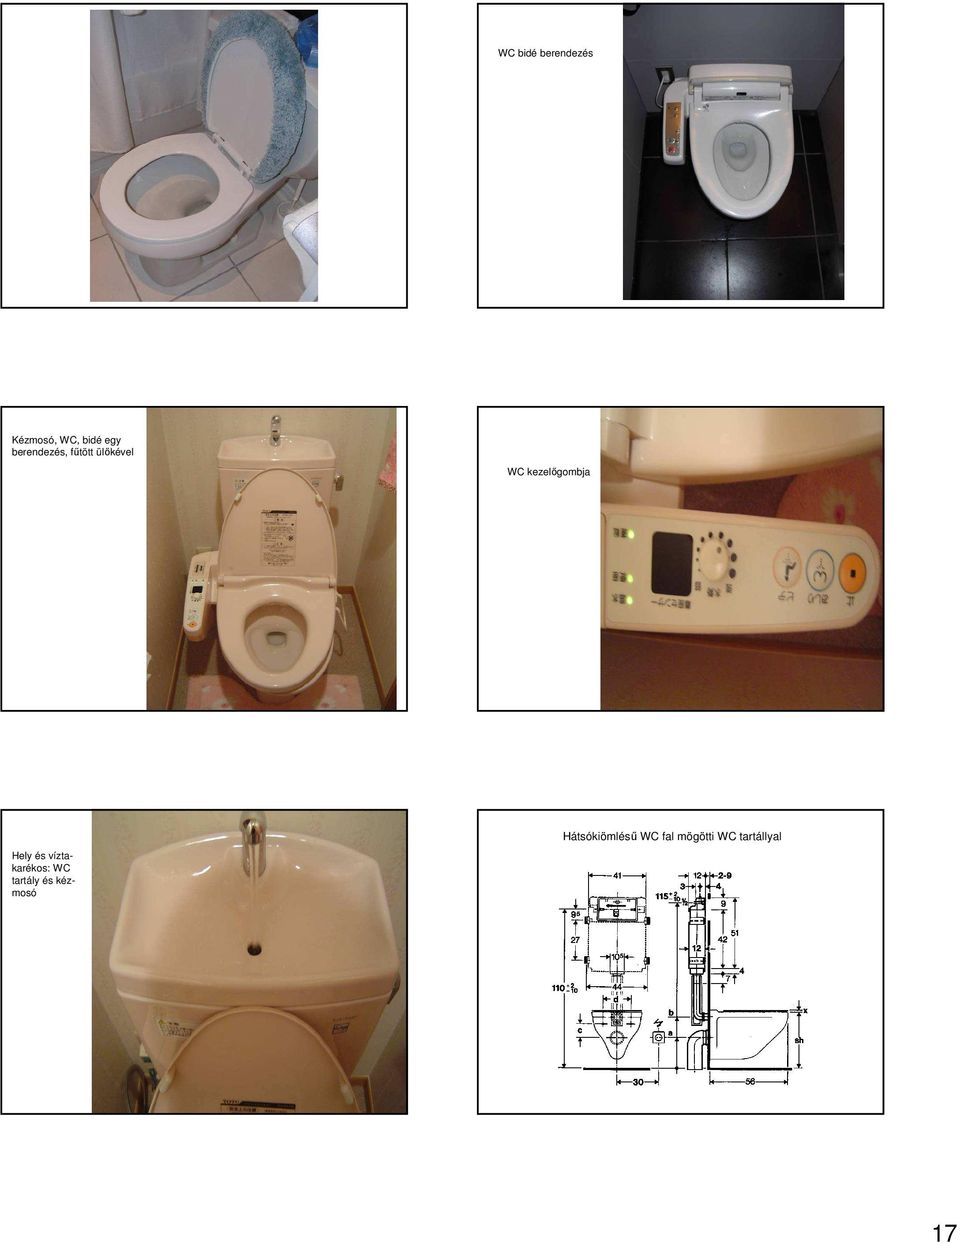 Hely és víztakarékos: WC tartály és kézmosó